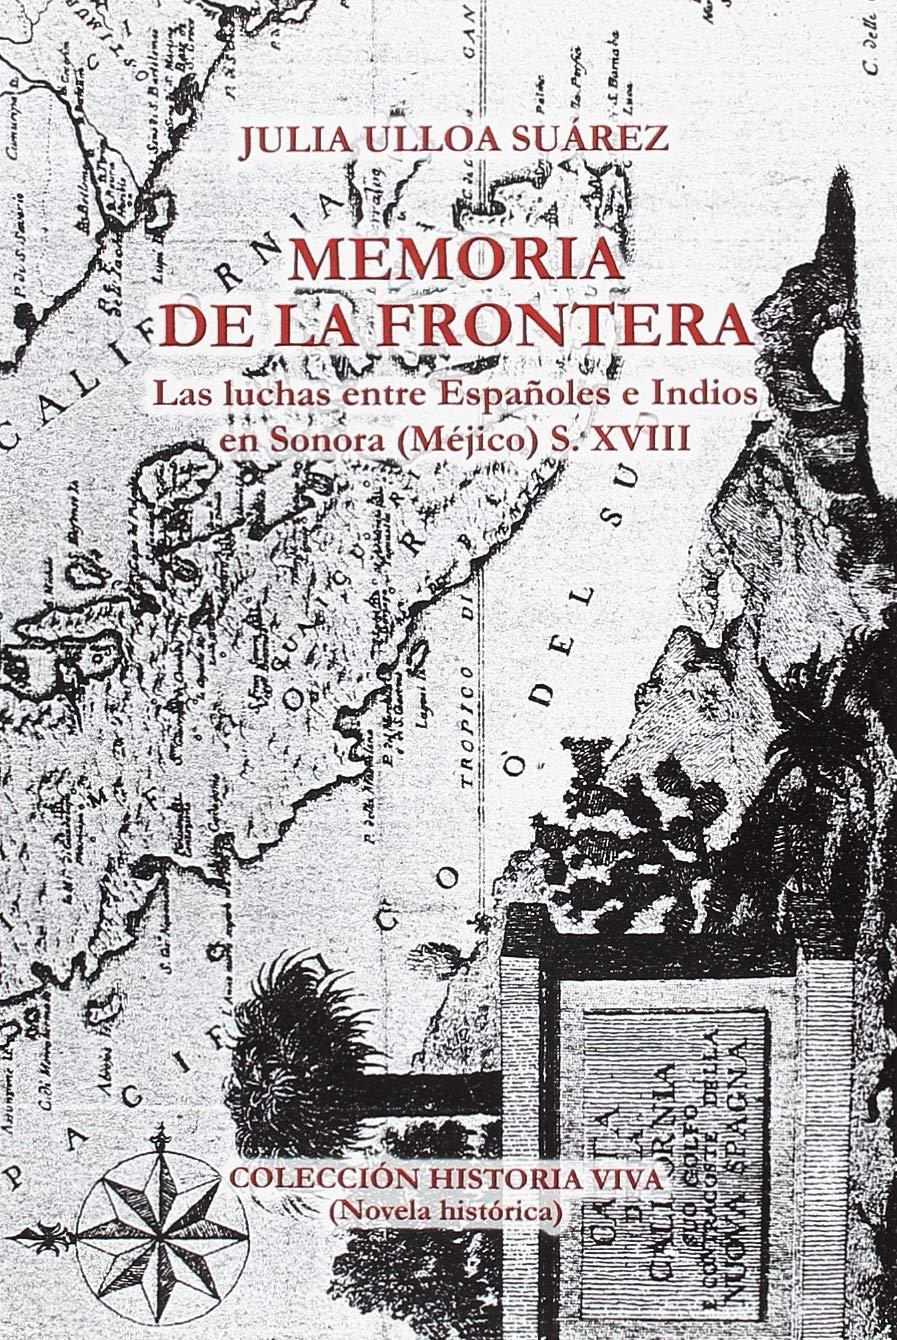 Memoria de la frontera. Las luchas entre españoles e indios en Sonora (Méjico) S.XVIII. 